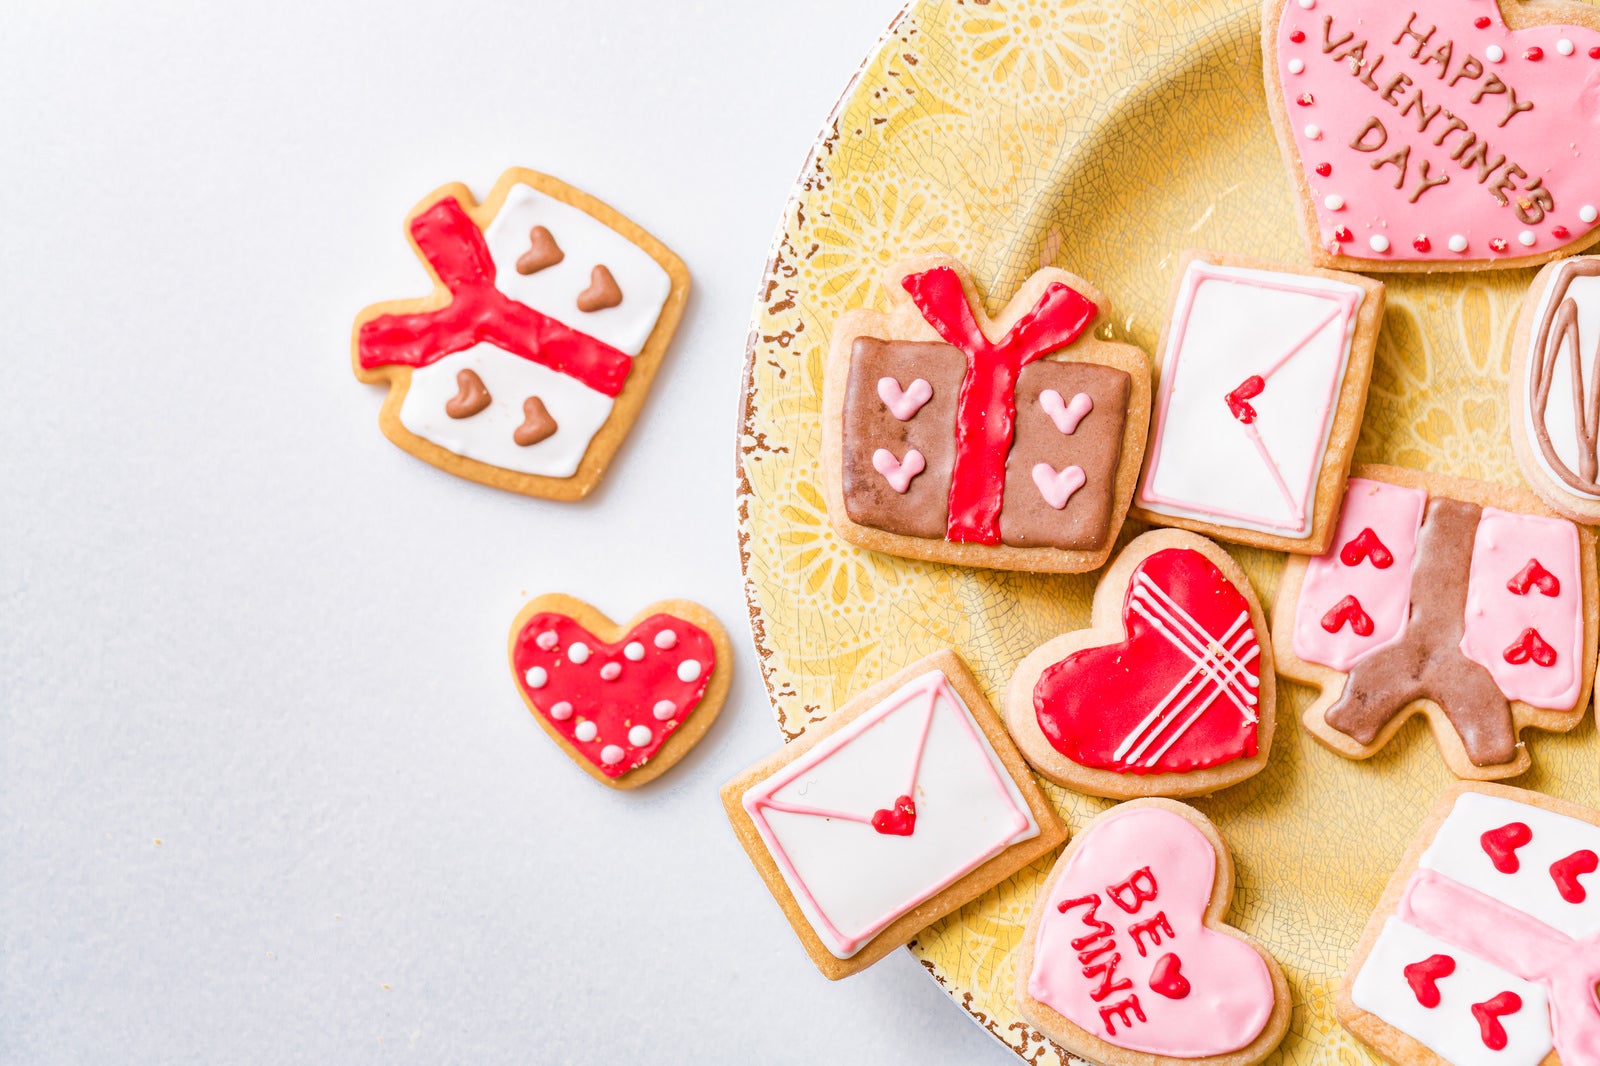 「皿からあふれるバレンタイン用のアイシングクッキー」の写真